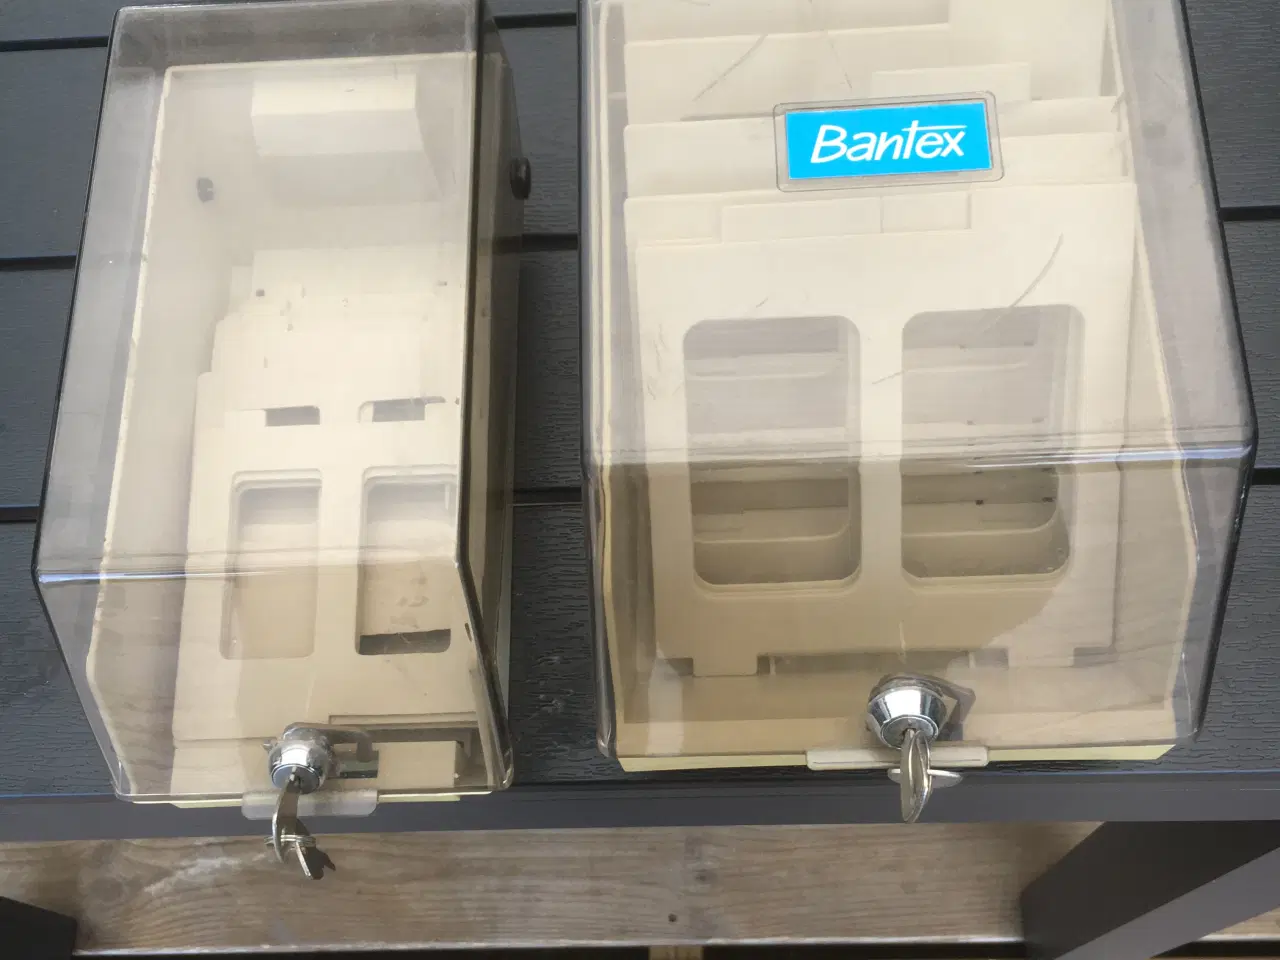 Billede 1 - To diskettebokse, forskellige formater